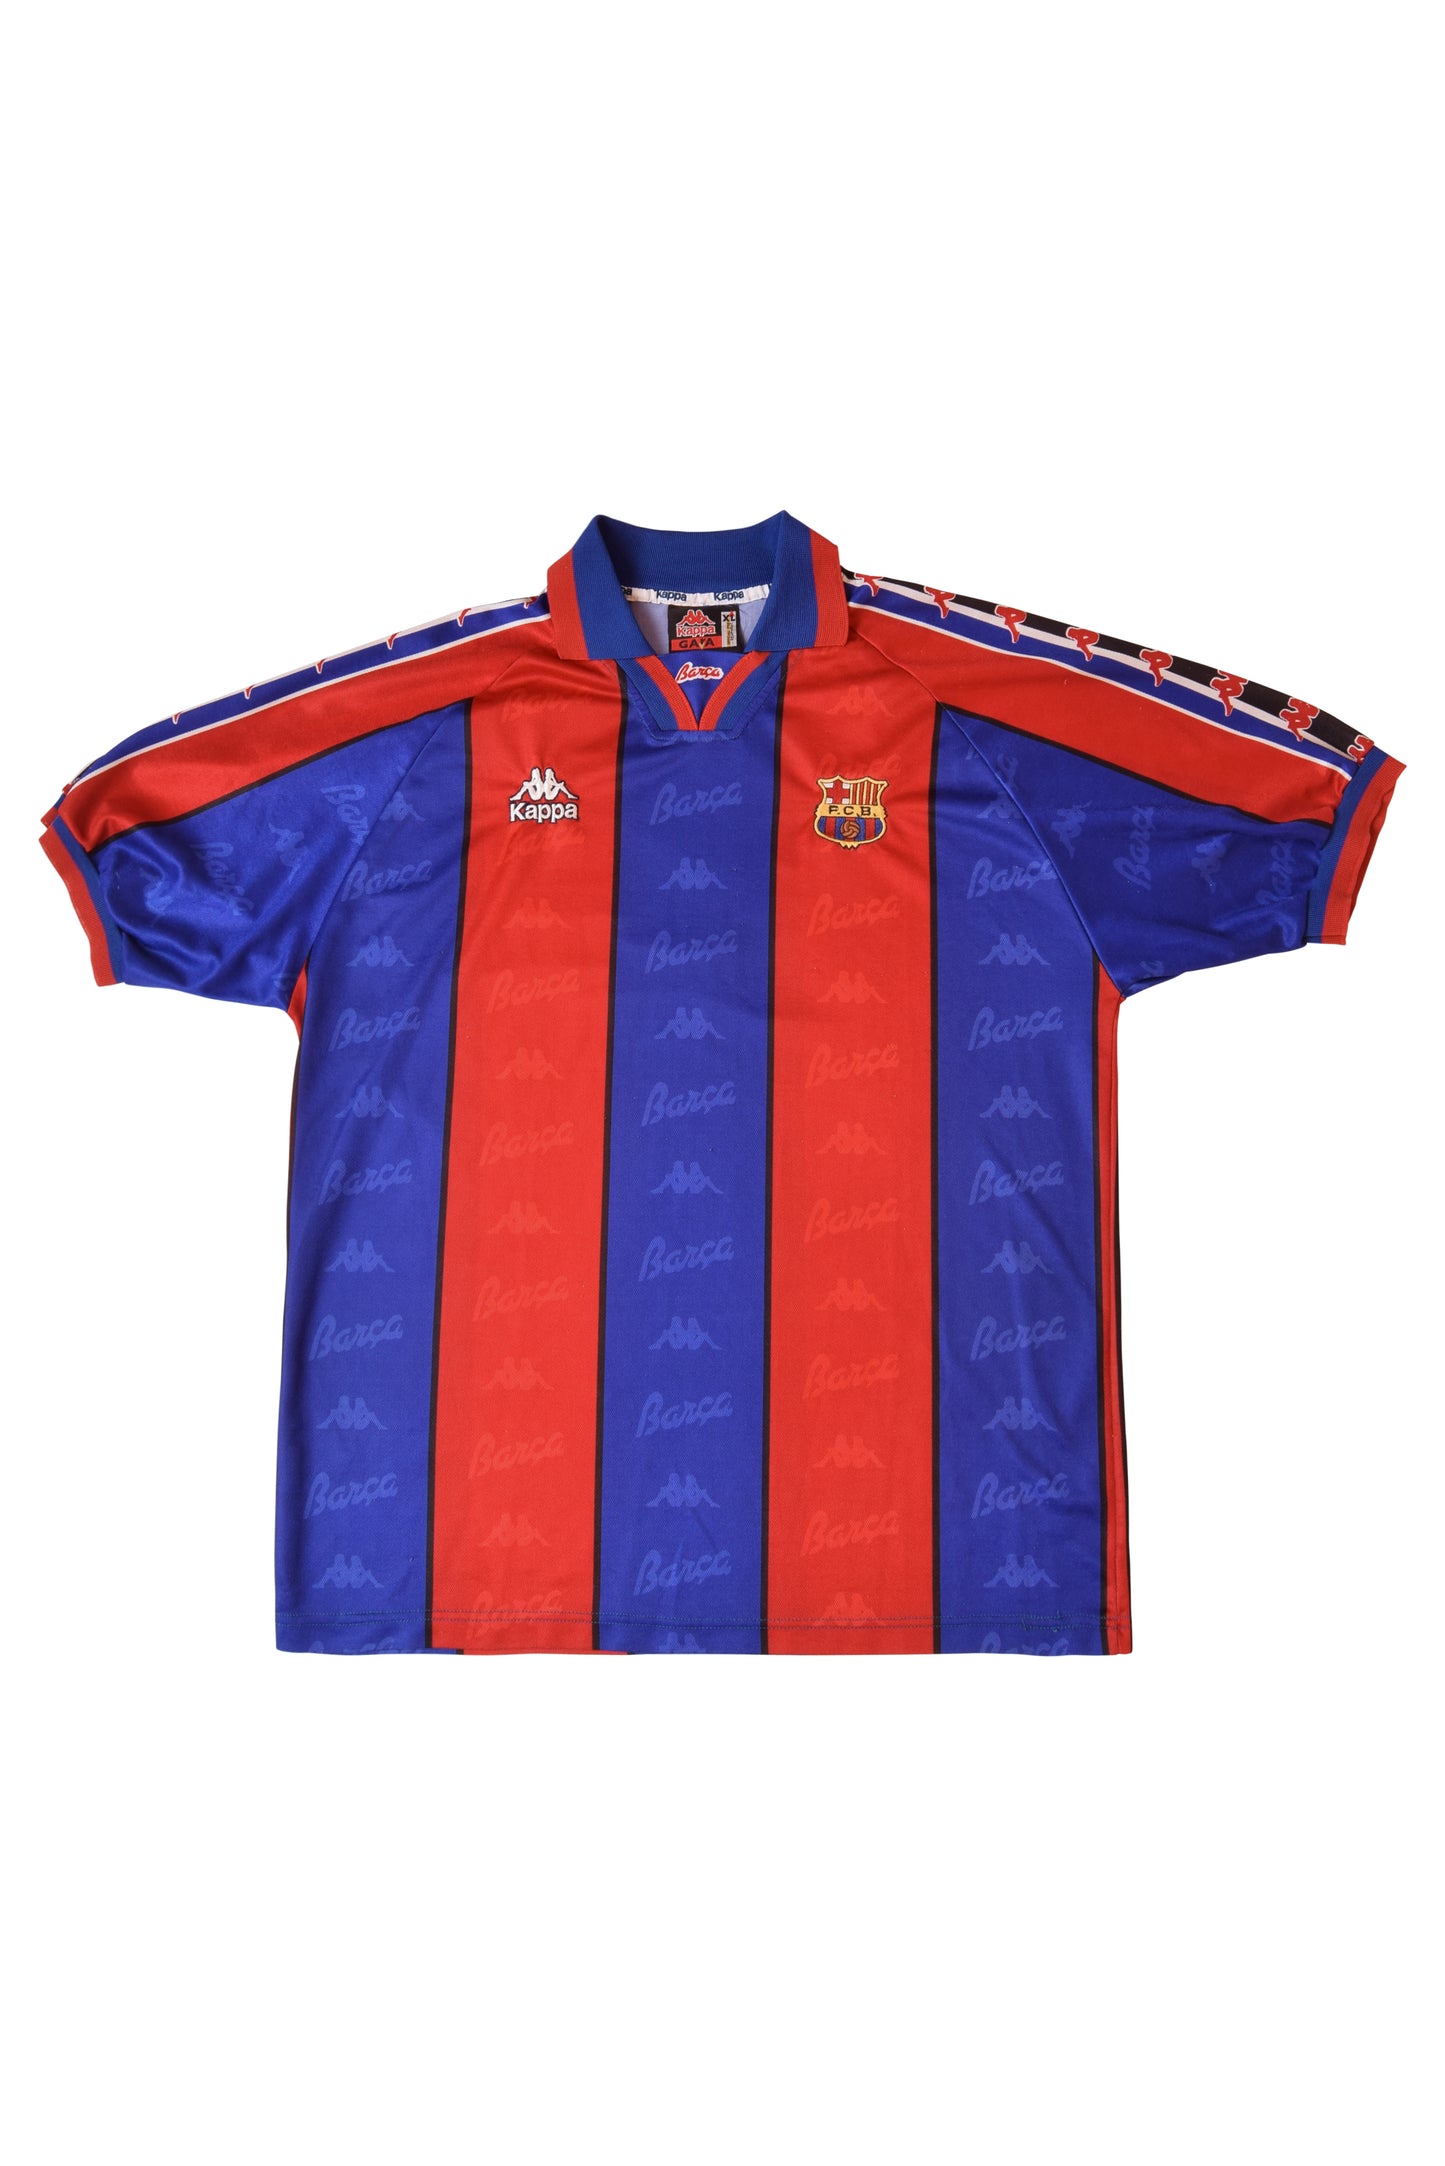 Vintage Barcelona Kappa Home Football Shirt 1995-1997 Size XL